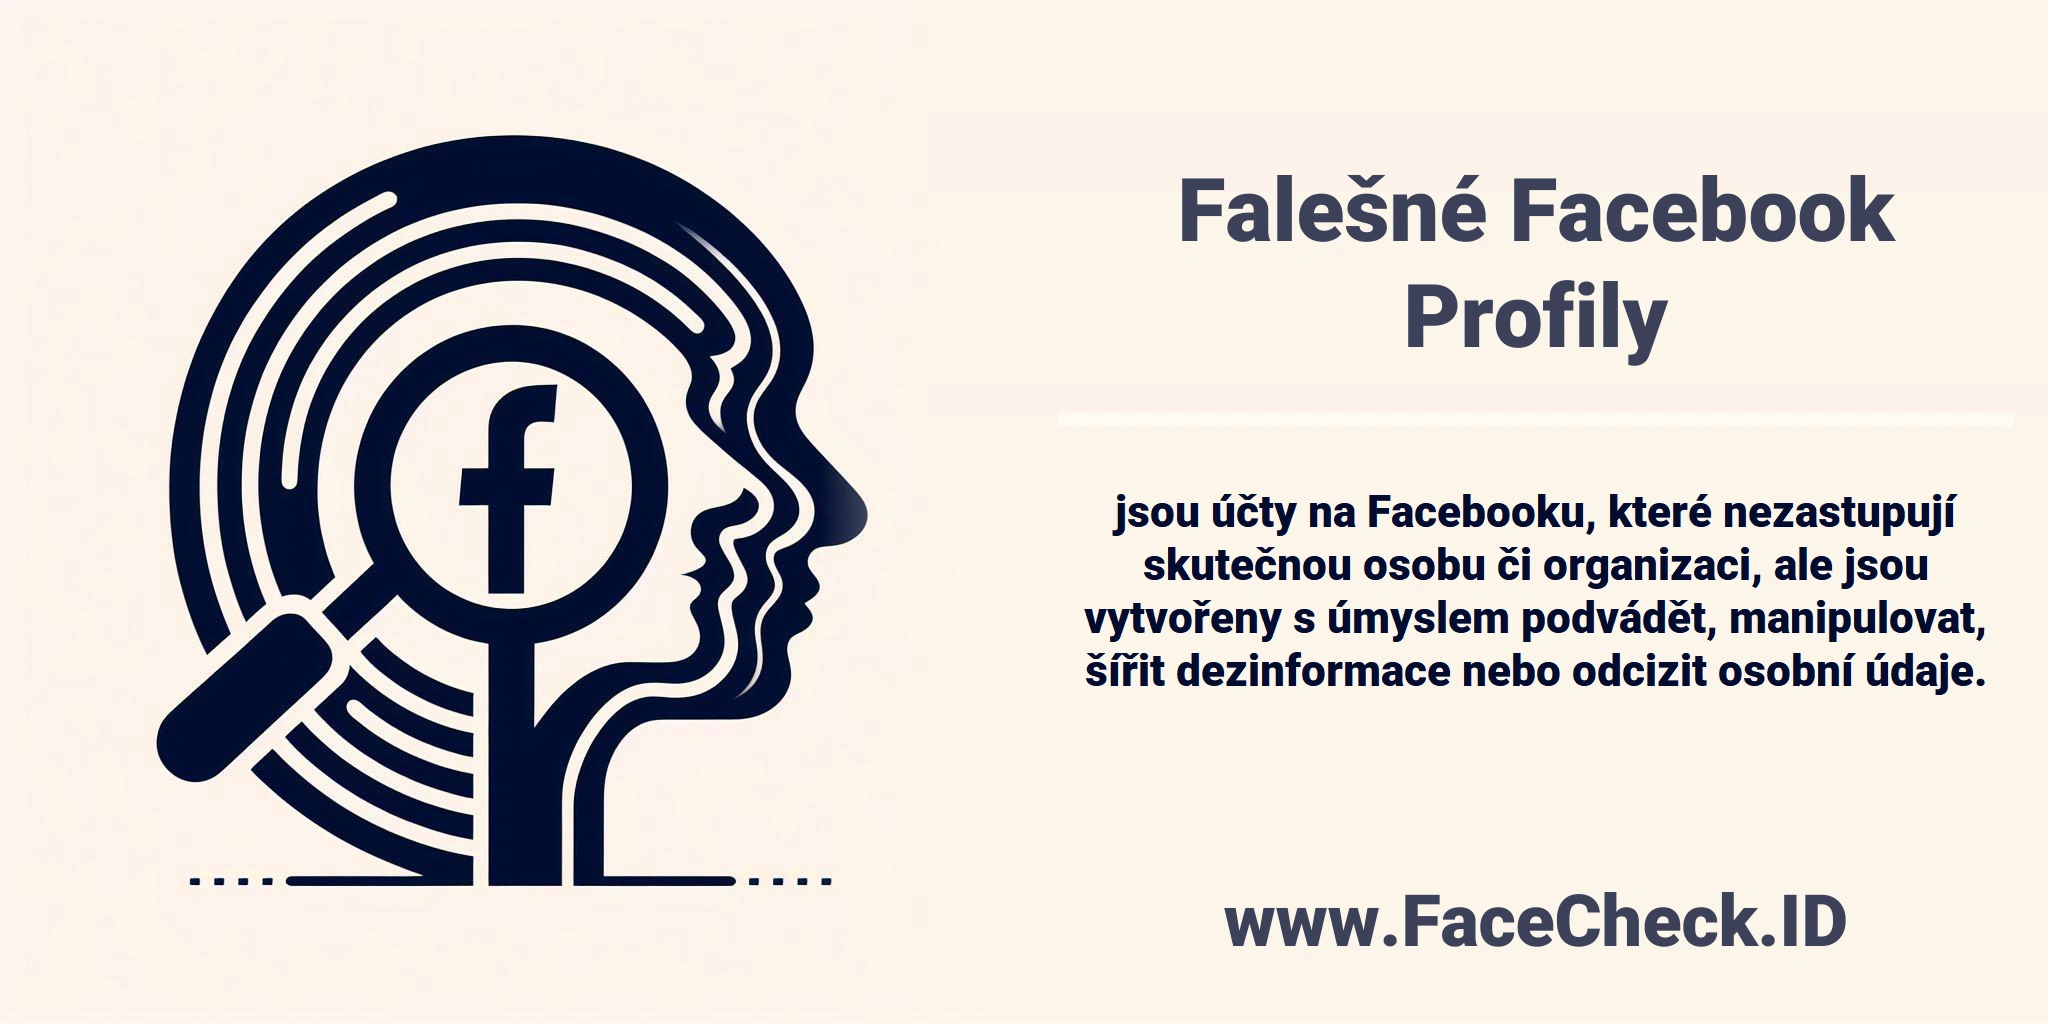 <b>Falešné Facebook Profily</b> jsou účty na Facebooku, které nezastupují skutečnou osobu či organizaci, ale jsou vytvořeny s úmyslem podvádět, manipulovat, šířit dezinformace nebo odcizit osobní údaje.